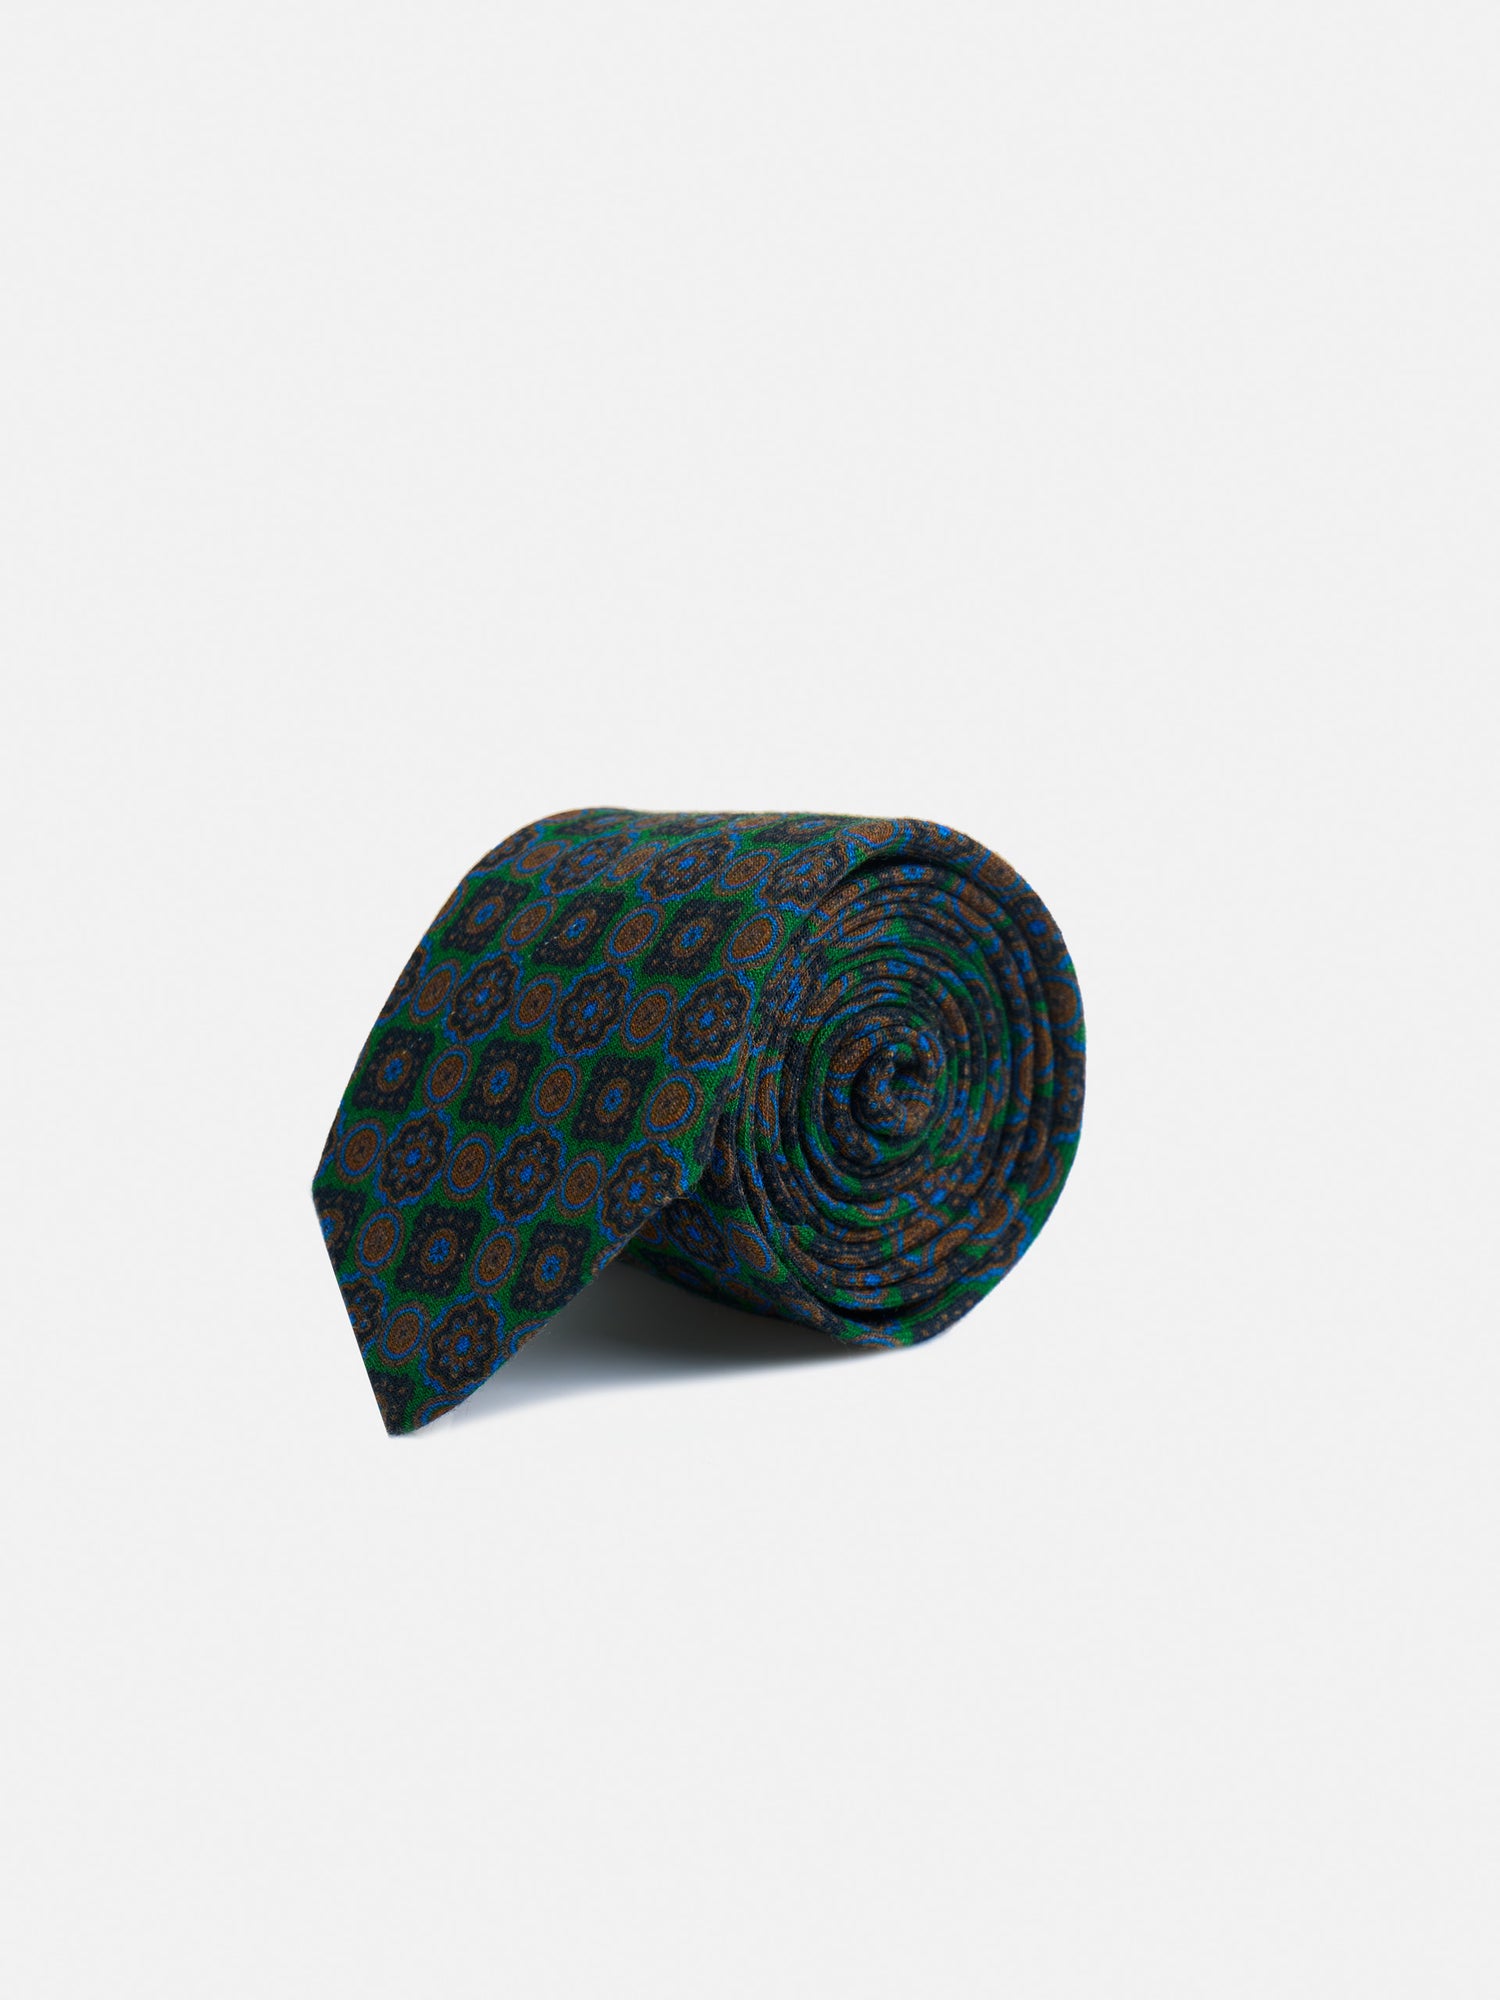 Cravate géométrique verte